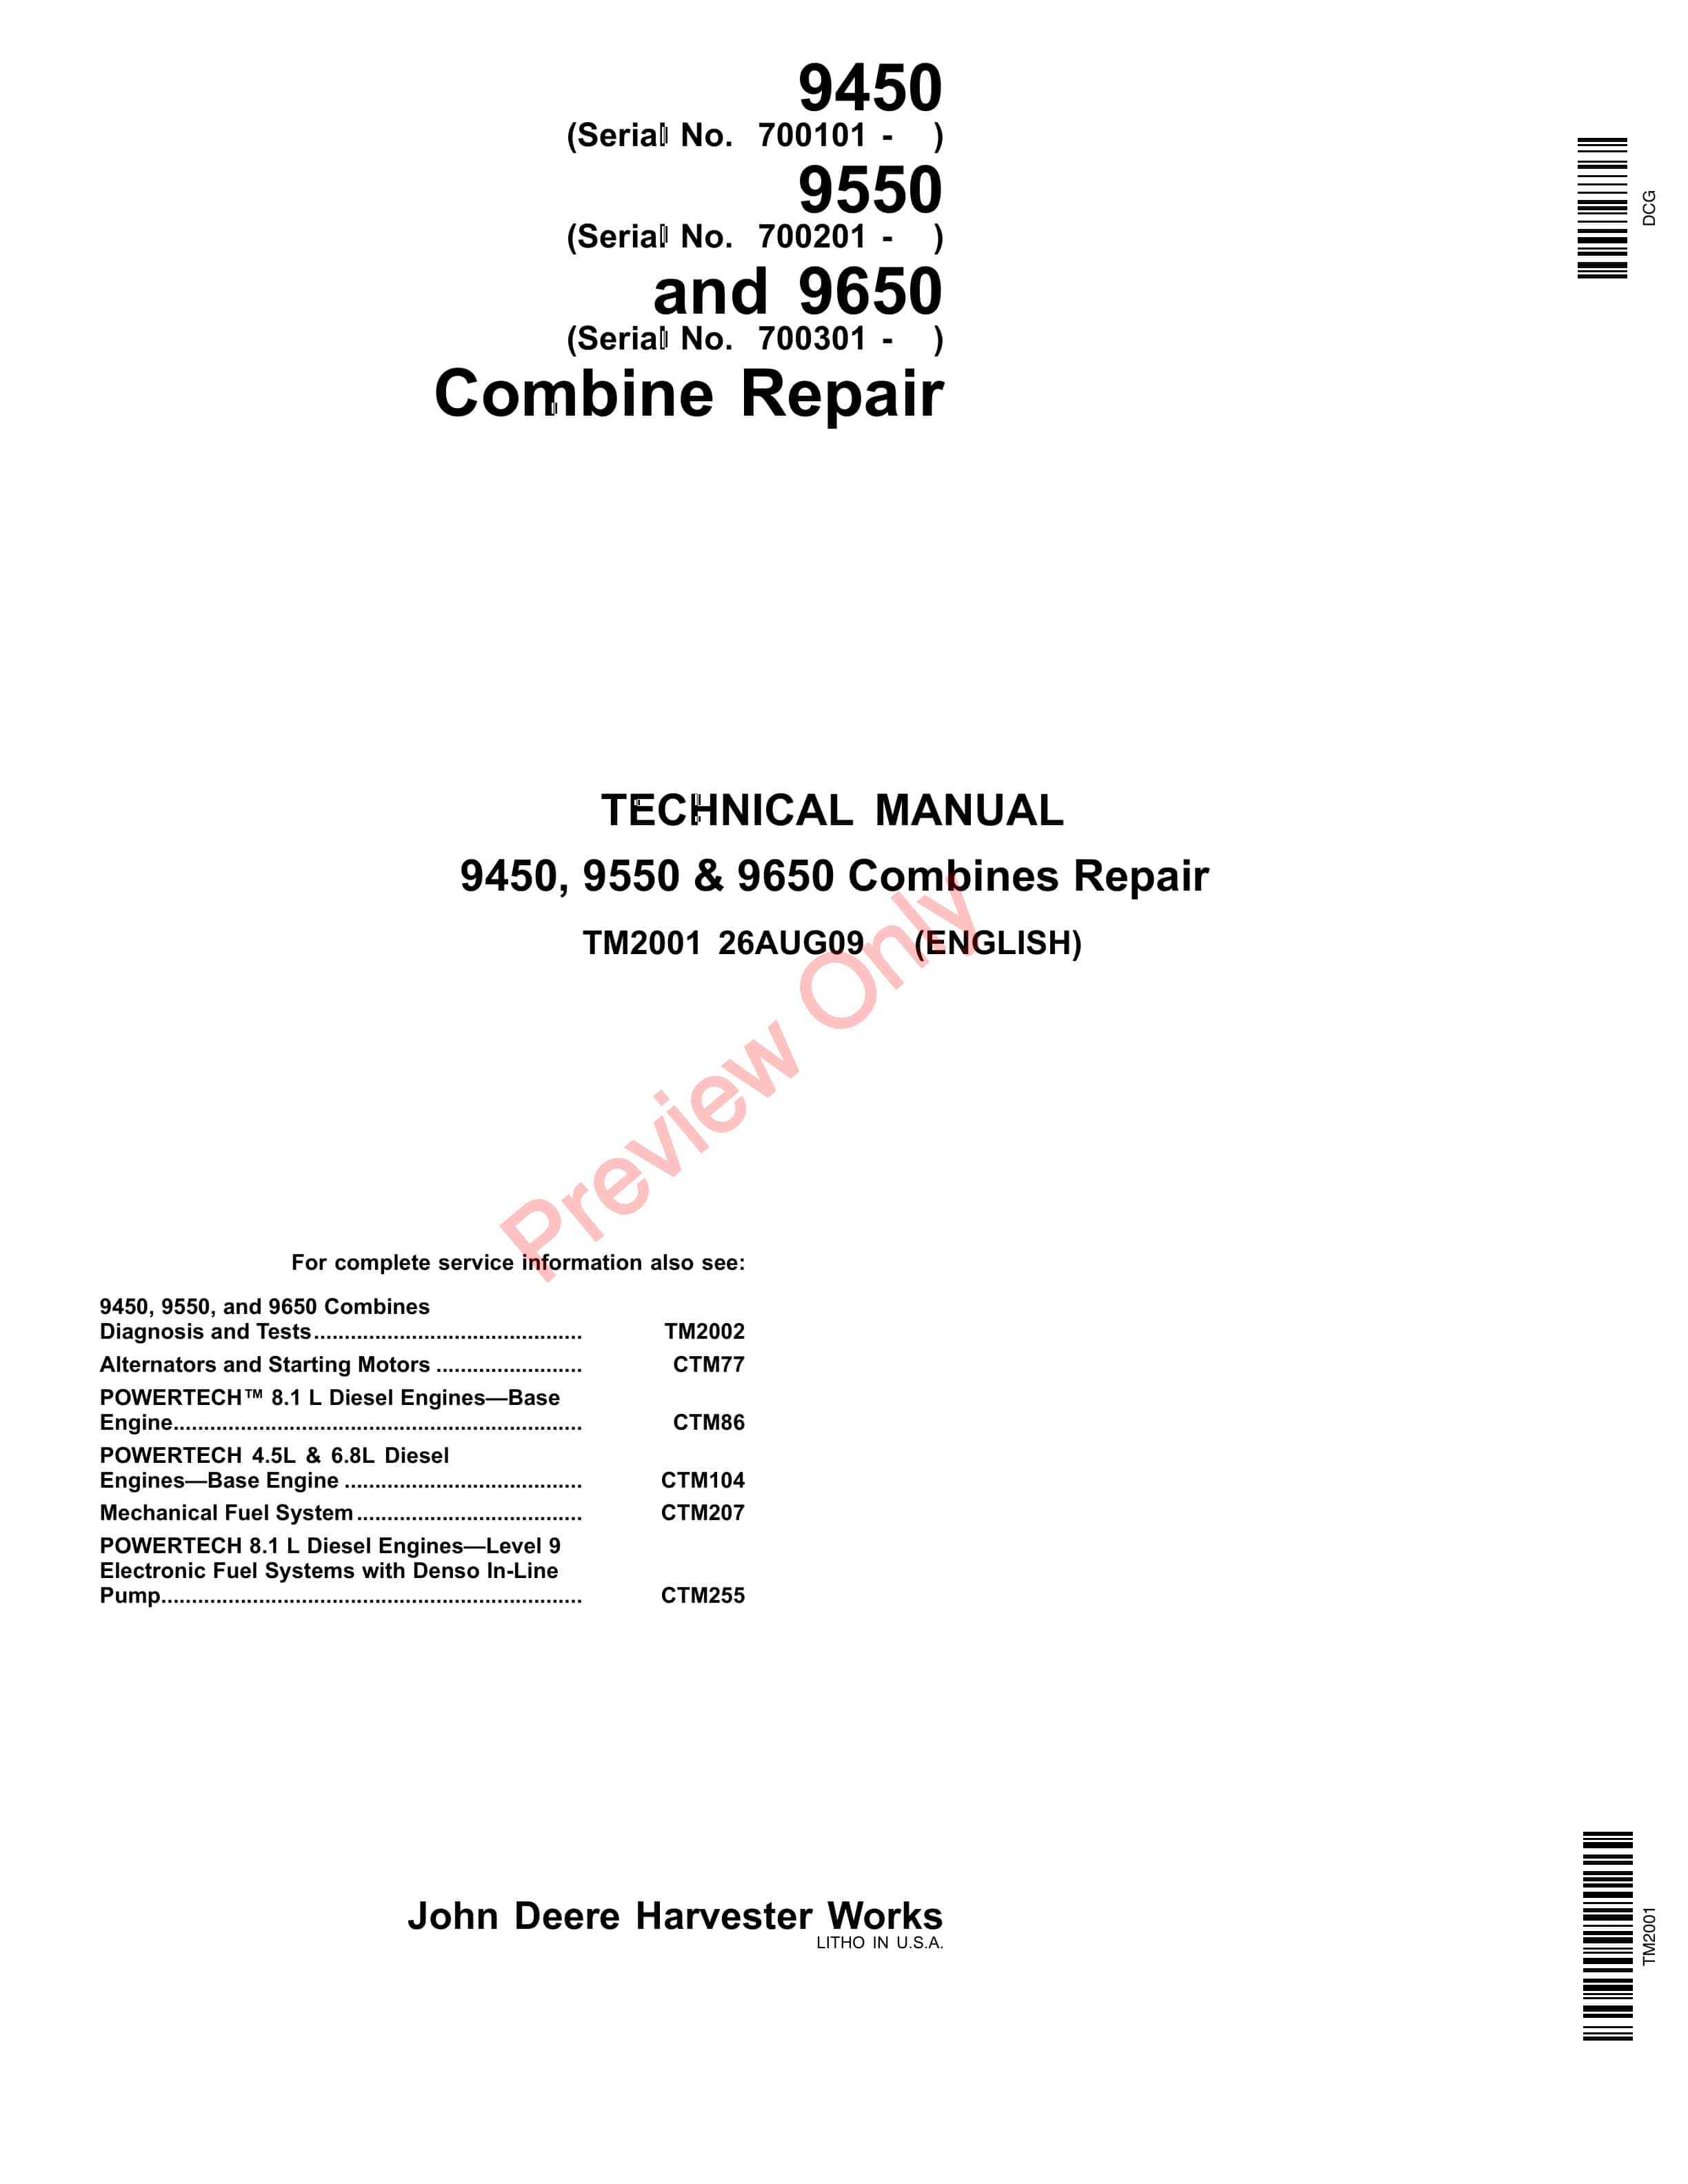 John Deere 9450 Combines (695101-) 9550 Combines (695201 Technical Manual TM2001 26AUG09-1